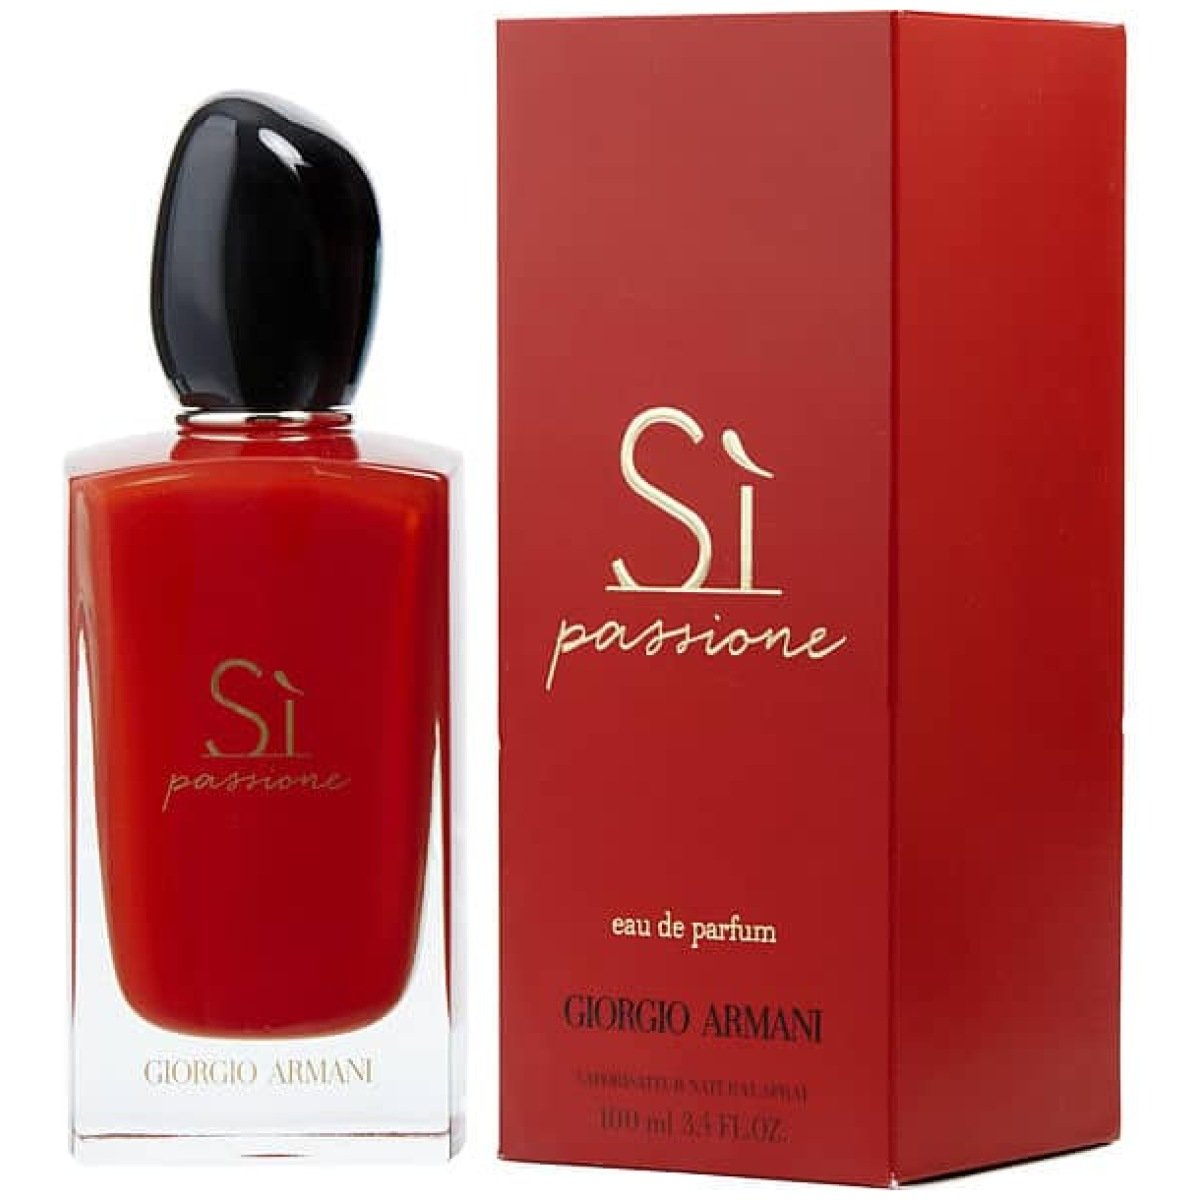 Giorgio Armani Si Passione EDP Perfume For Women 100 ml